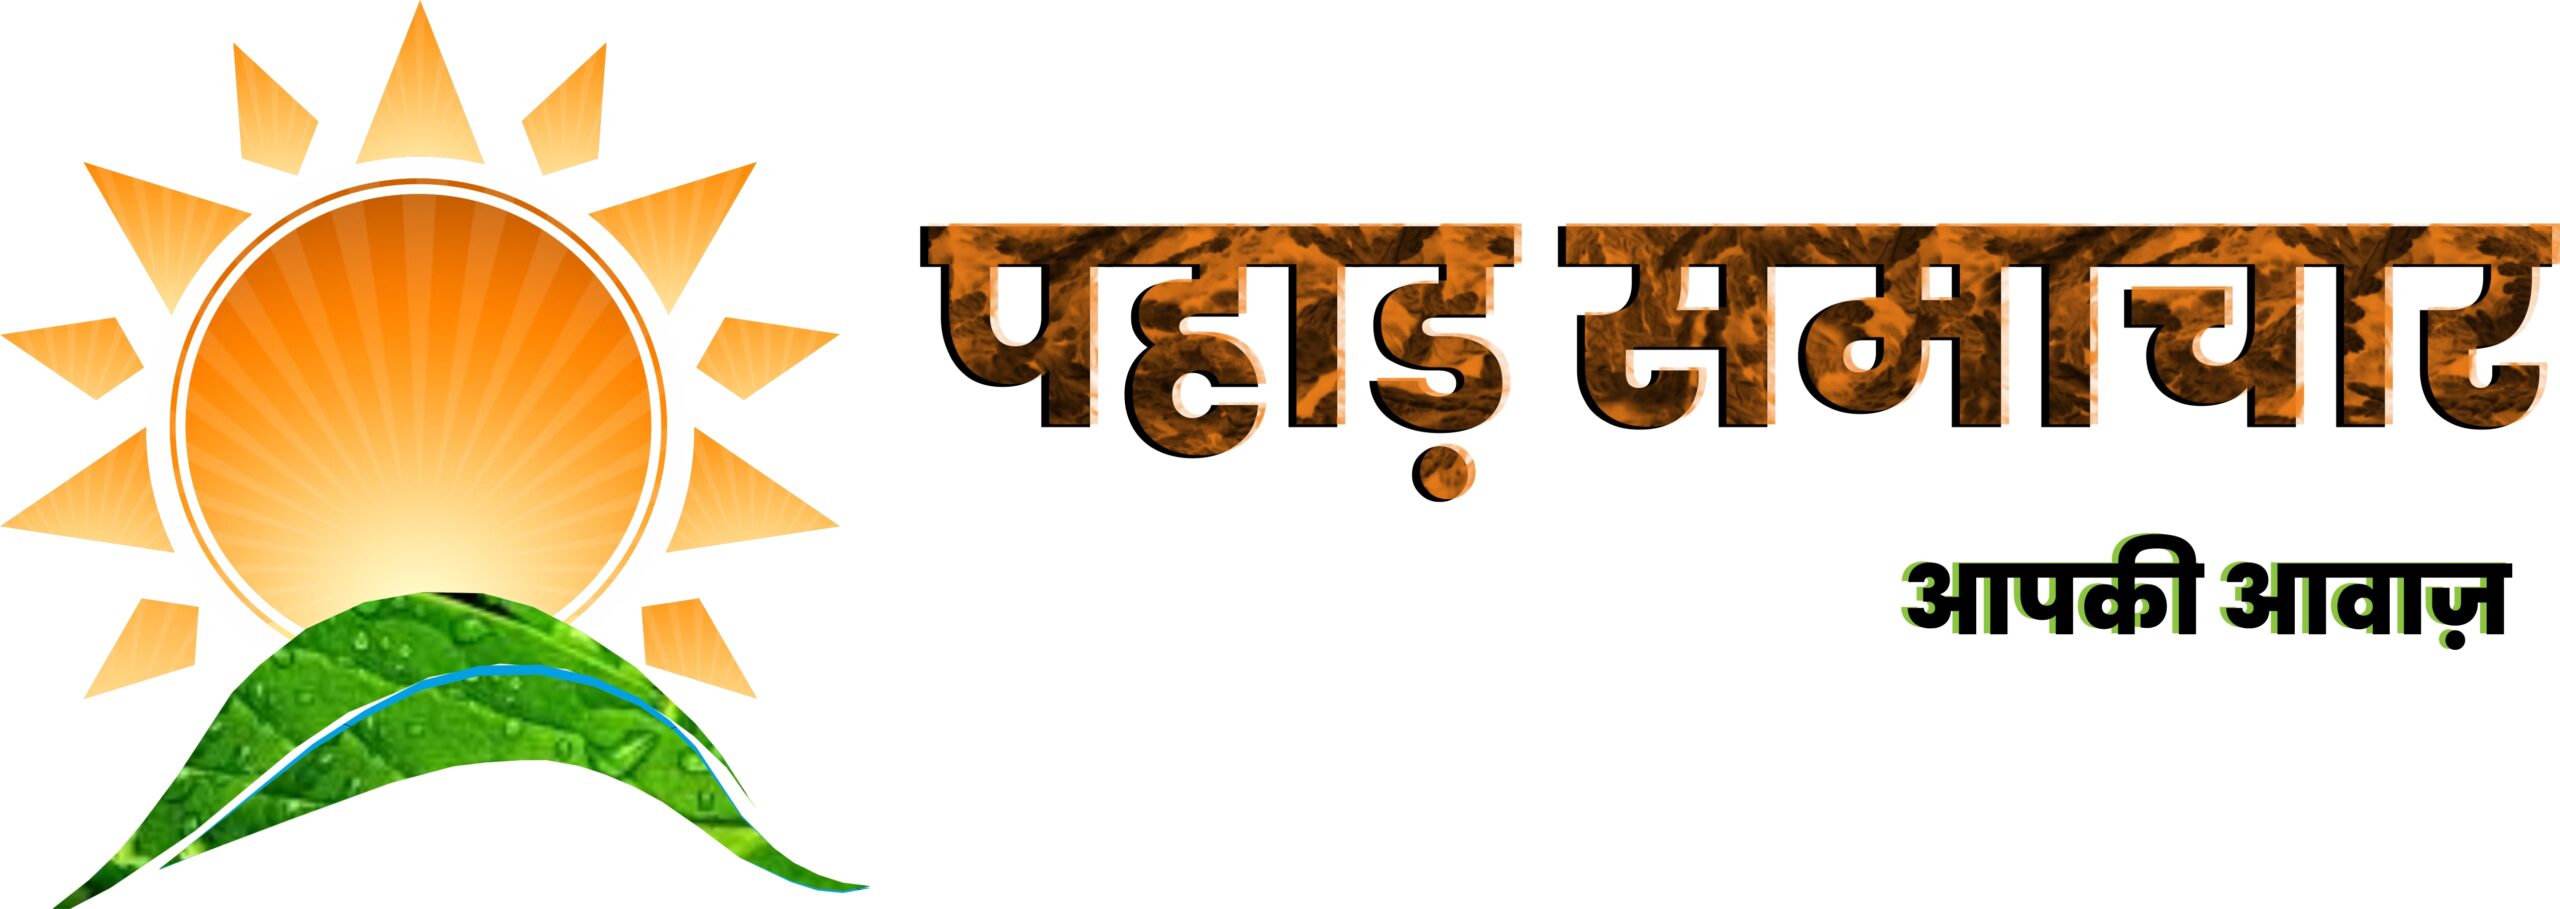 Uttarakhand News: इस अवकाश की बदली तारीख, अब इस दिन रहेगी छुट्टी..